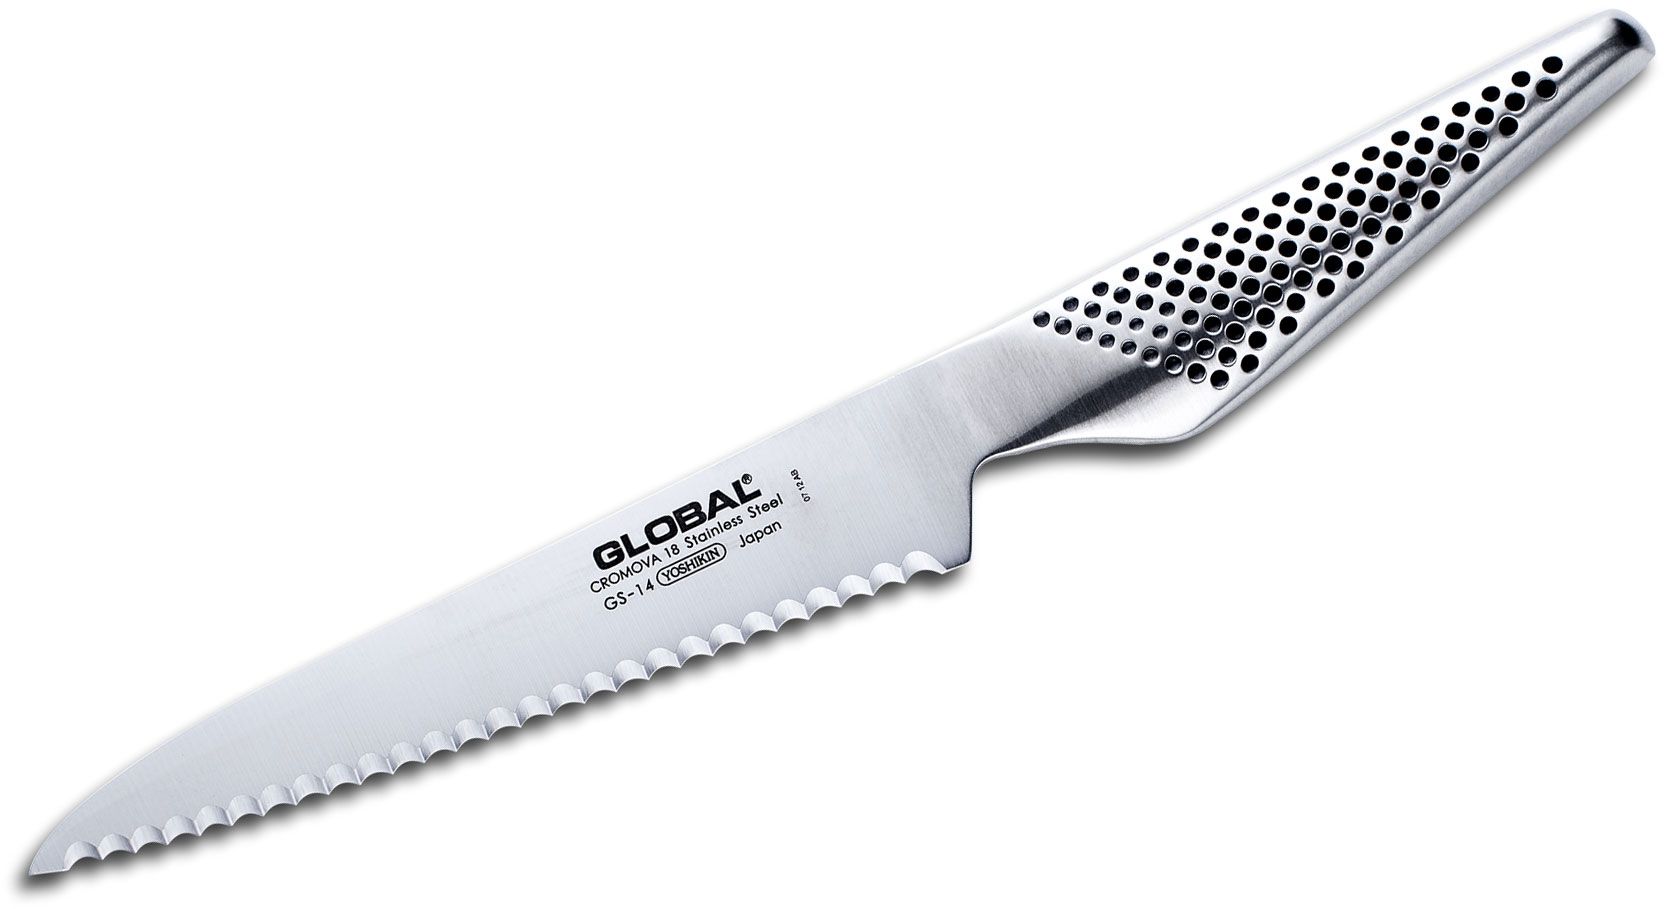 Global 6 Chef's Knife